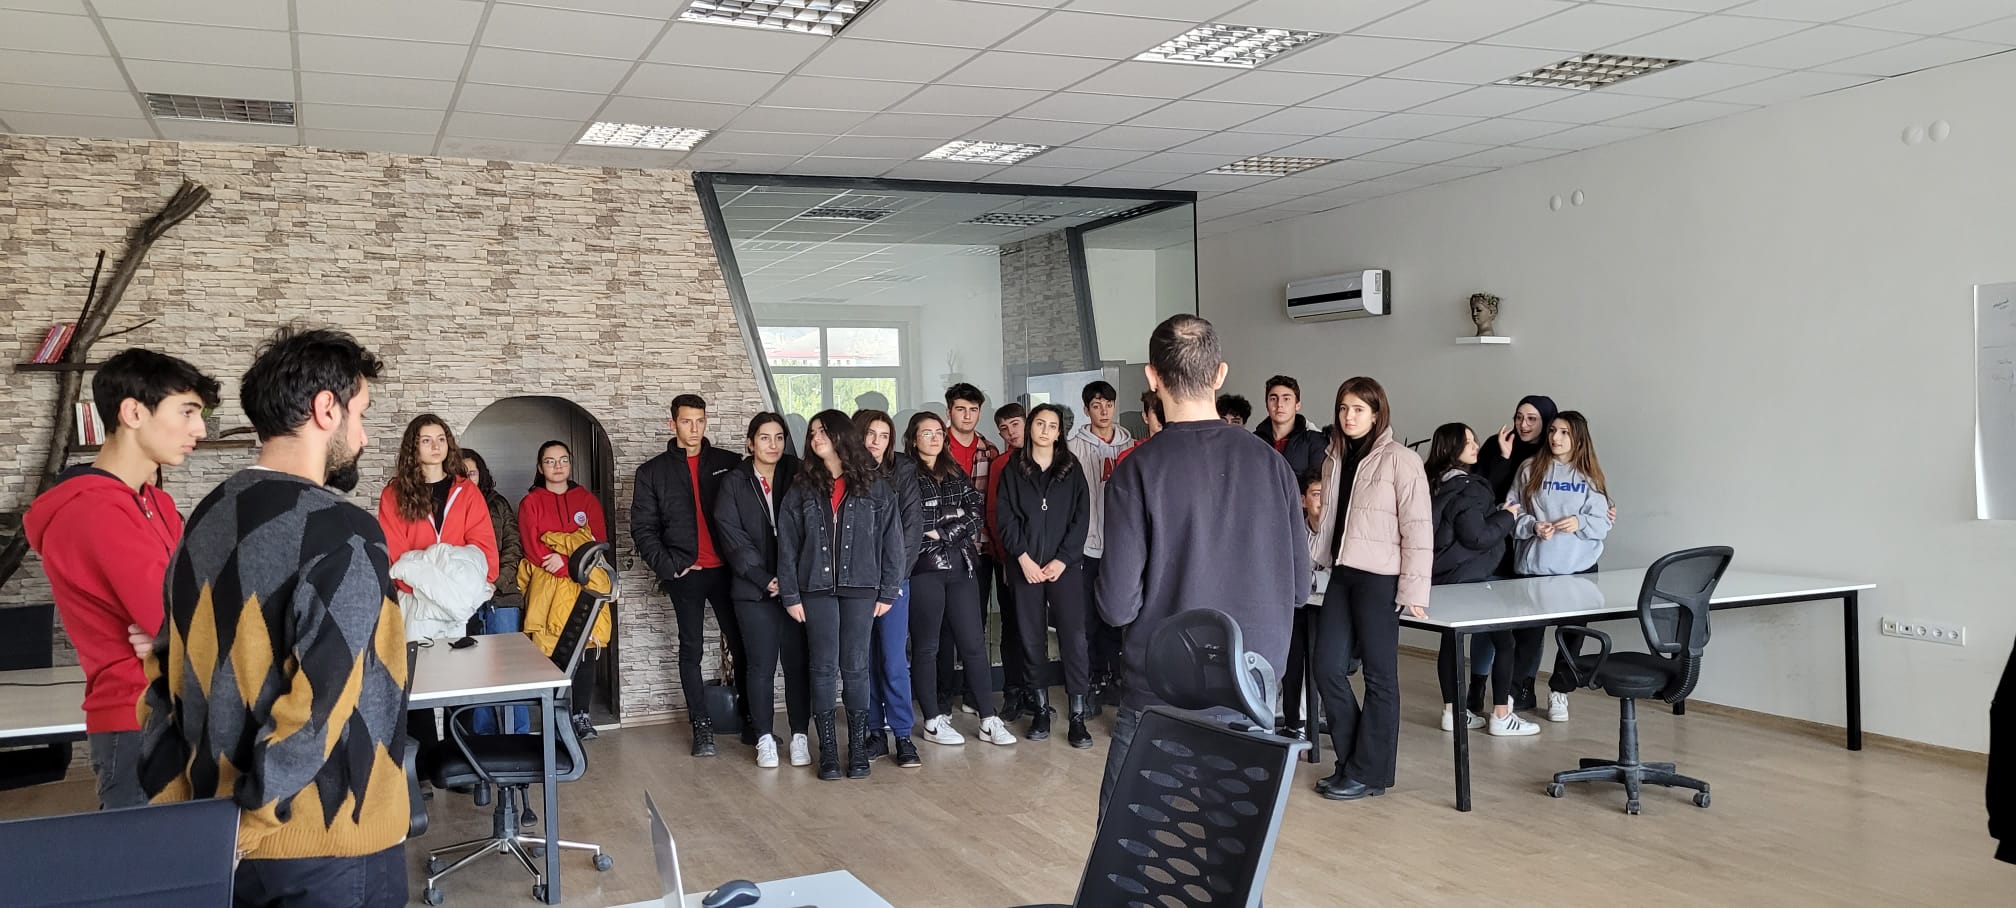 Sivas Cumhuriyet Üniversitesi Vakfı Koleji Mehmet Recai Taydemir Anadolu Fen Lisesi öğrencileri ve öğretmenleri Cumhuriyet Teknokent’i ziyaret etti